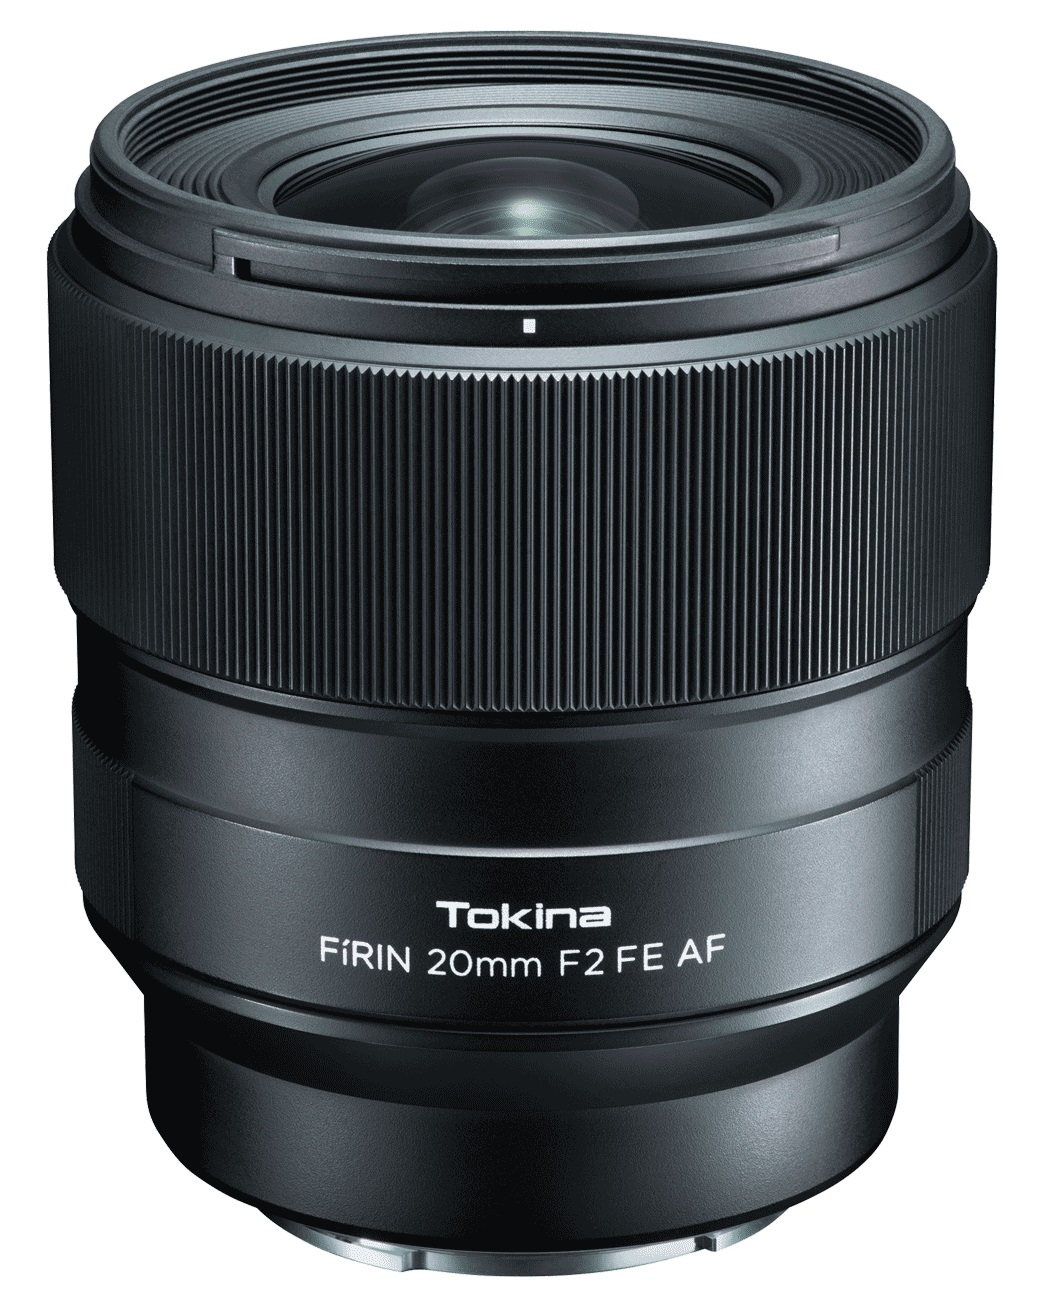 Объектив Tokina FIRIN 20mm F2 FE AF для Sony автофокус объектив sigma af 35mm f 1 4 dg hsm nikon